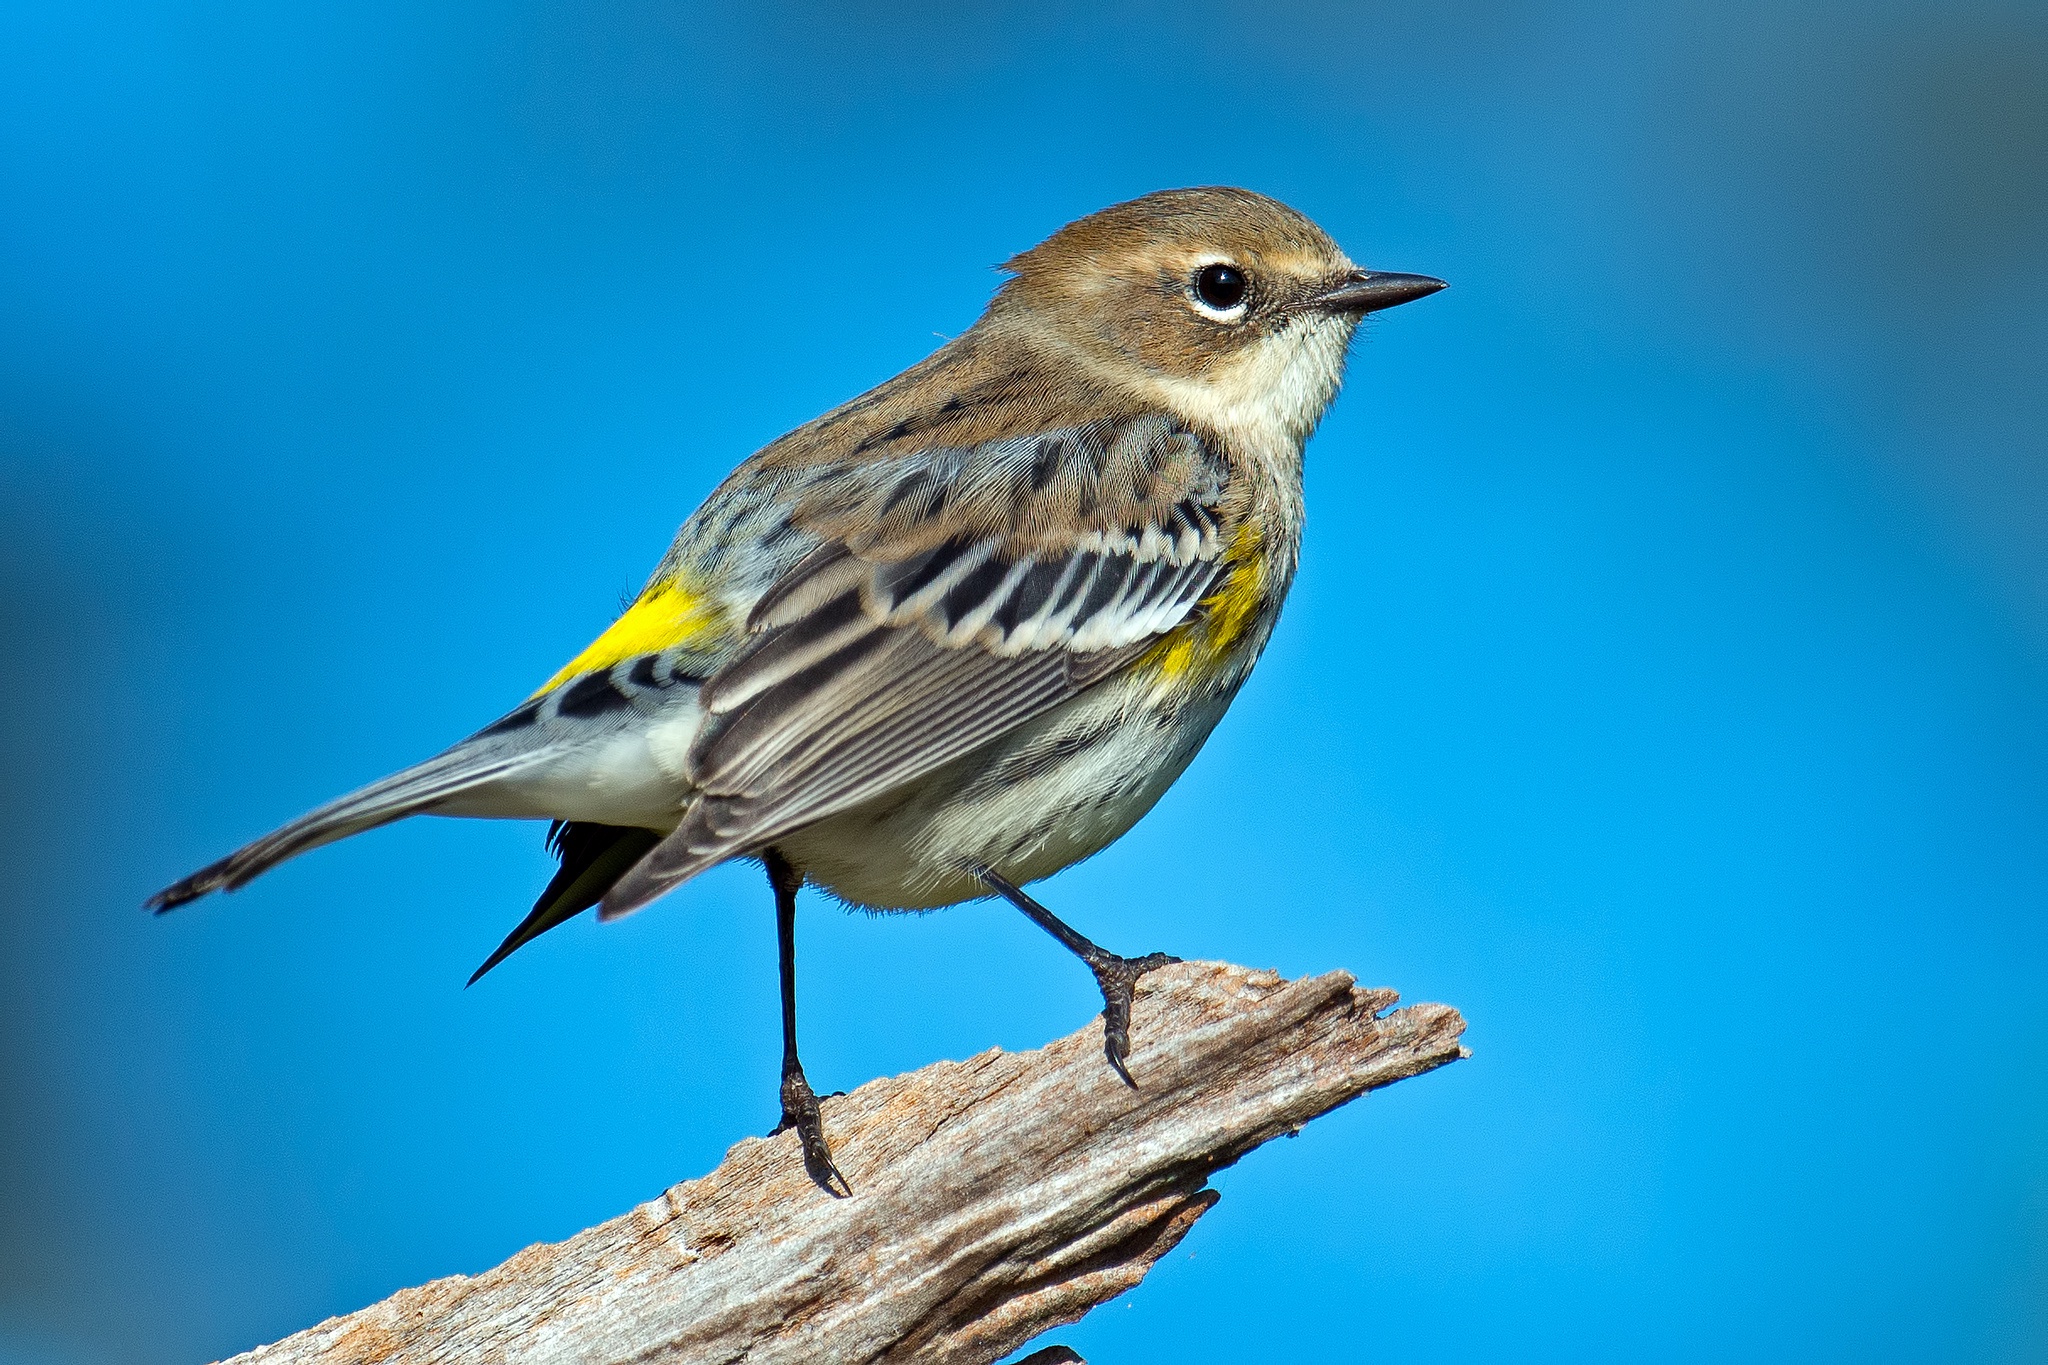 Птички с желтыми полосками. Птица Yellow Rumped Warbler. Синица зеленушка. Миртовый Лесной певун. Yellow-Rumped Warbler птица Yellow Rumped.